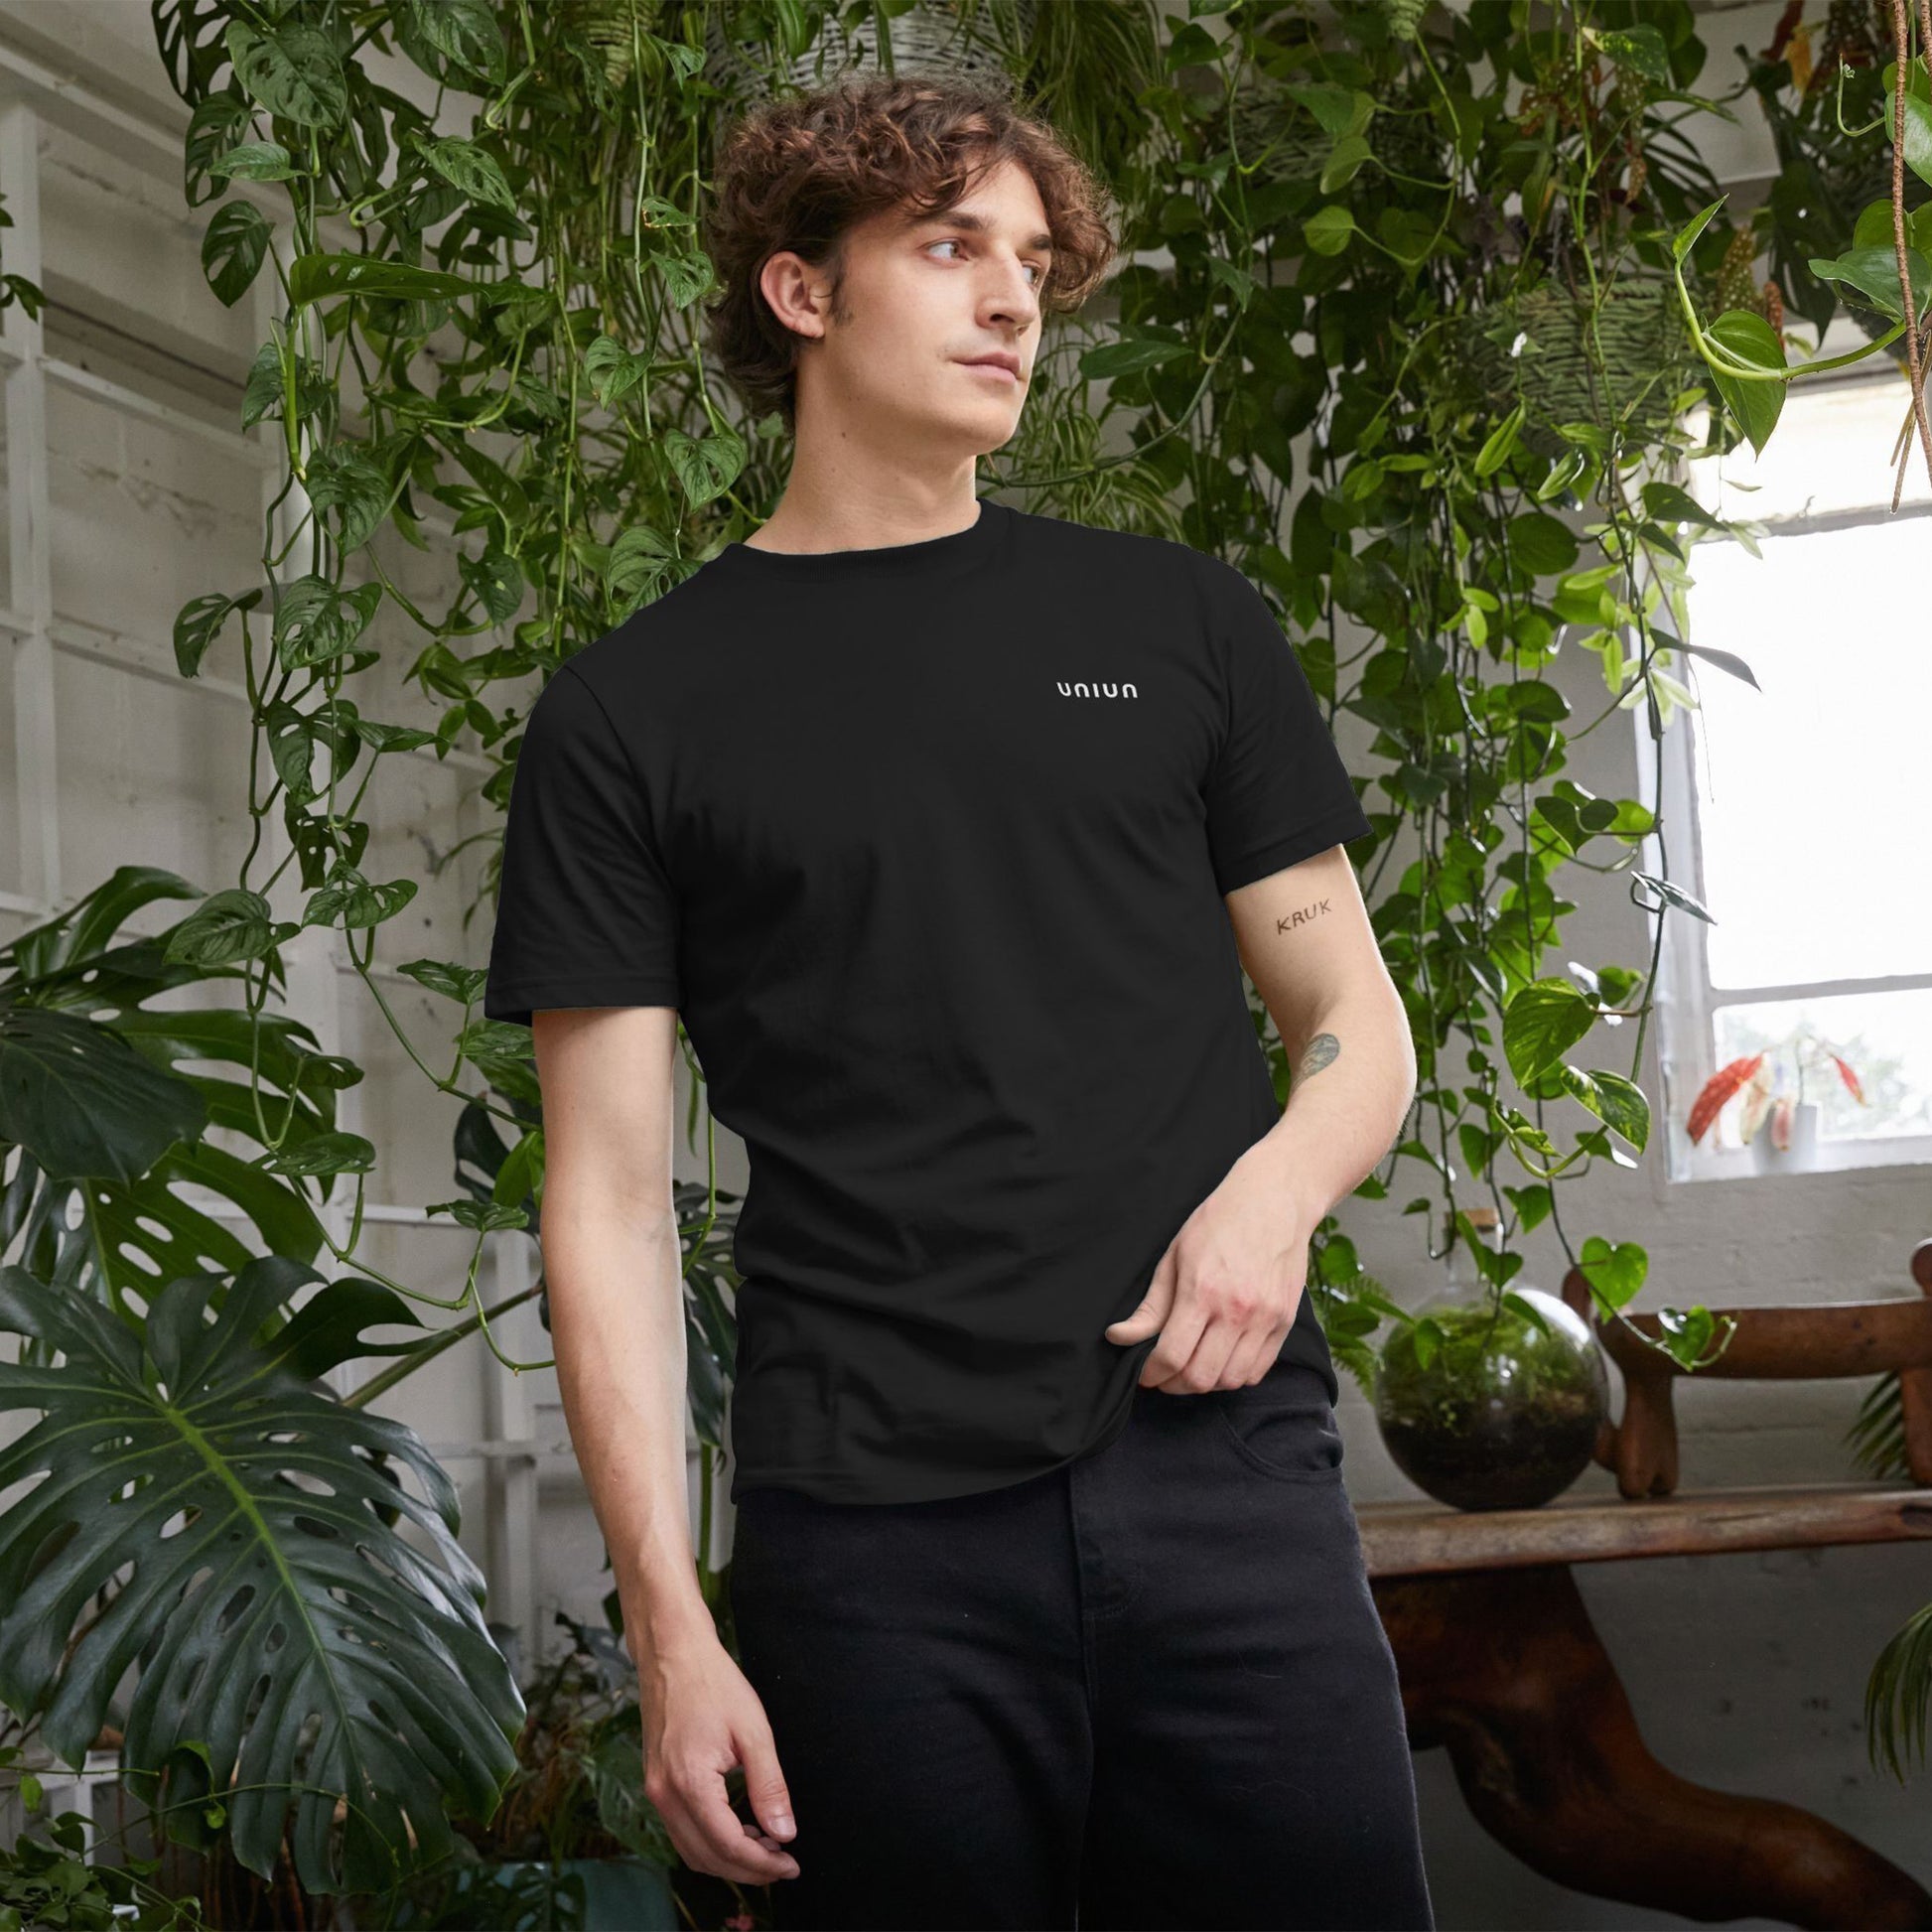 UNIUN Recycled Men's Black T-shirt